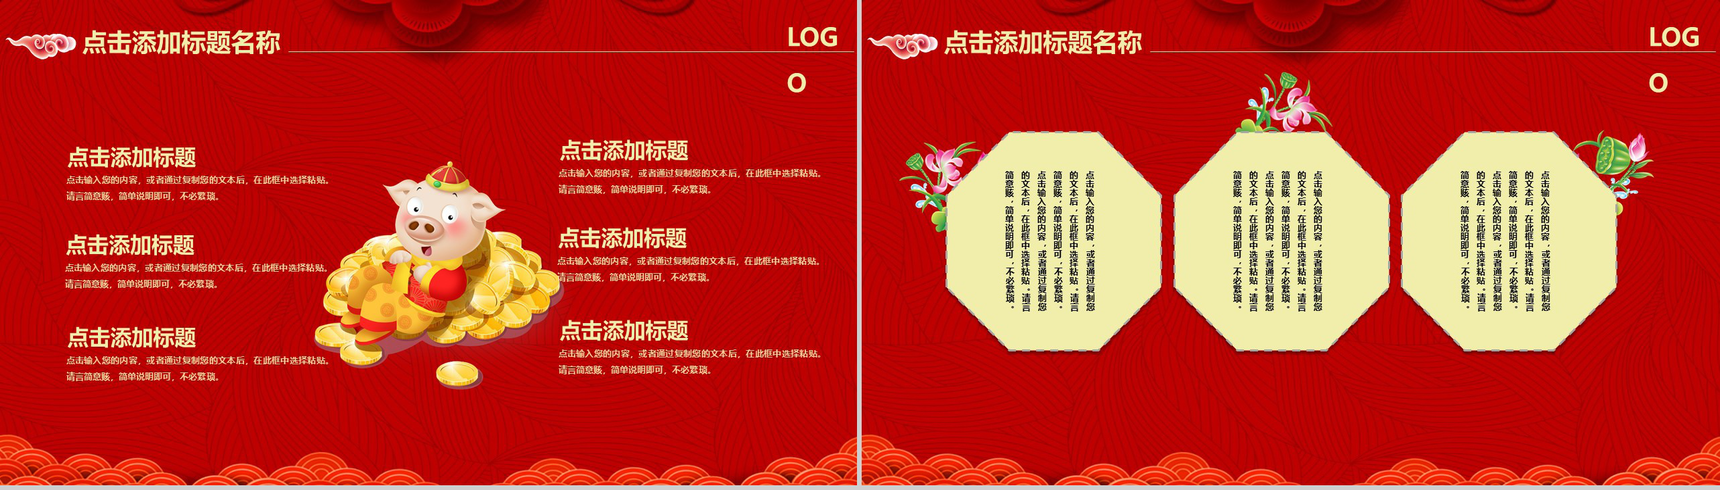 中国风恭贺新春鼠年大吉年终总结汇报PPT模板-6